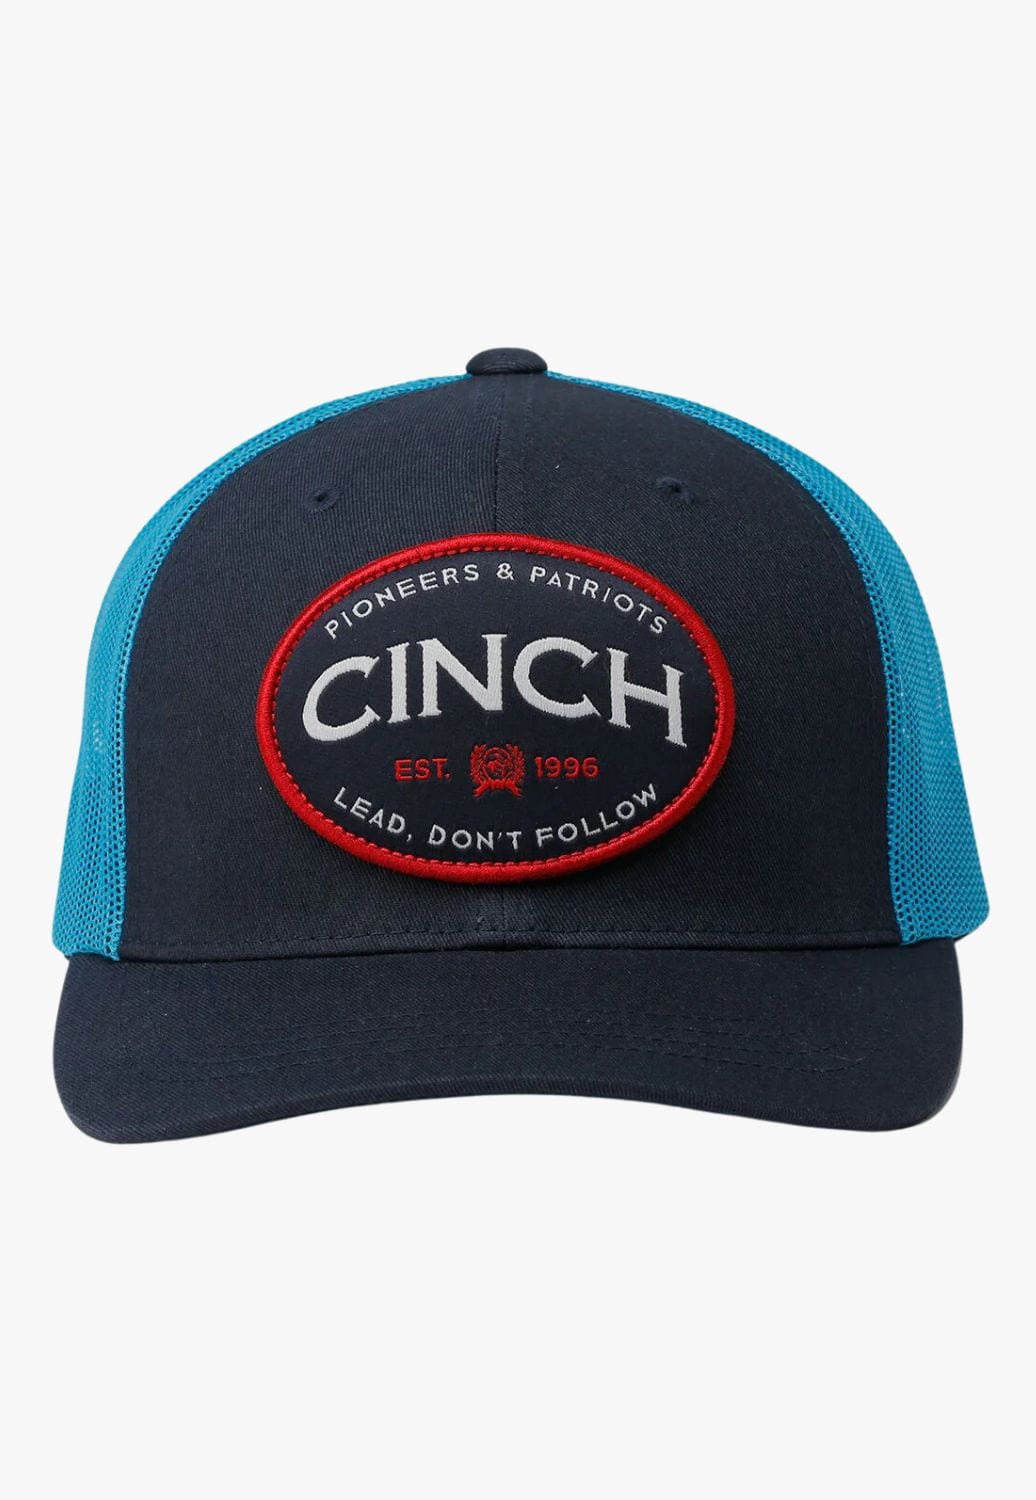 Cinch HATS - Caps Navy/Blue Cinch Pioneers And Patriots Cap